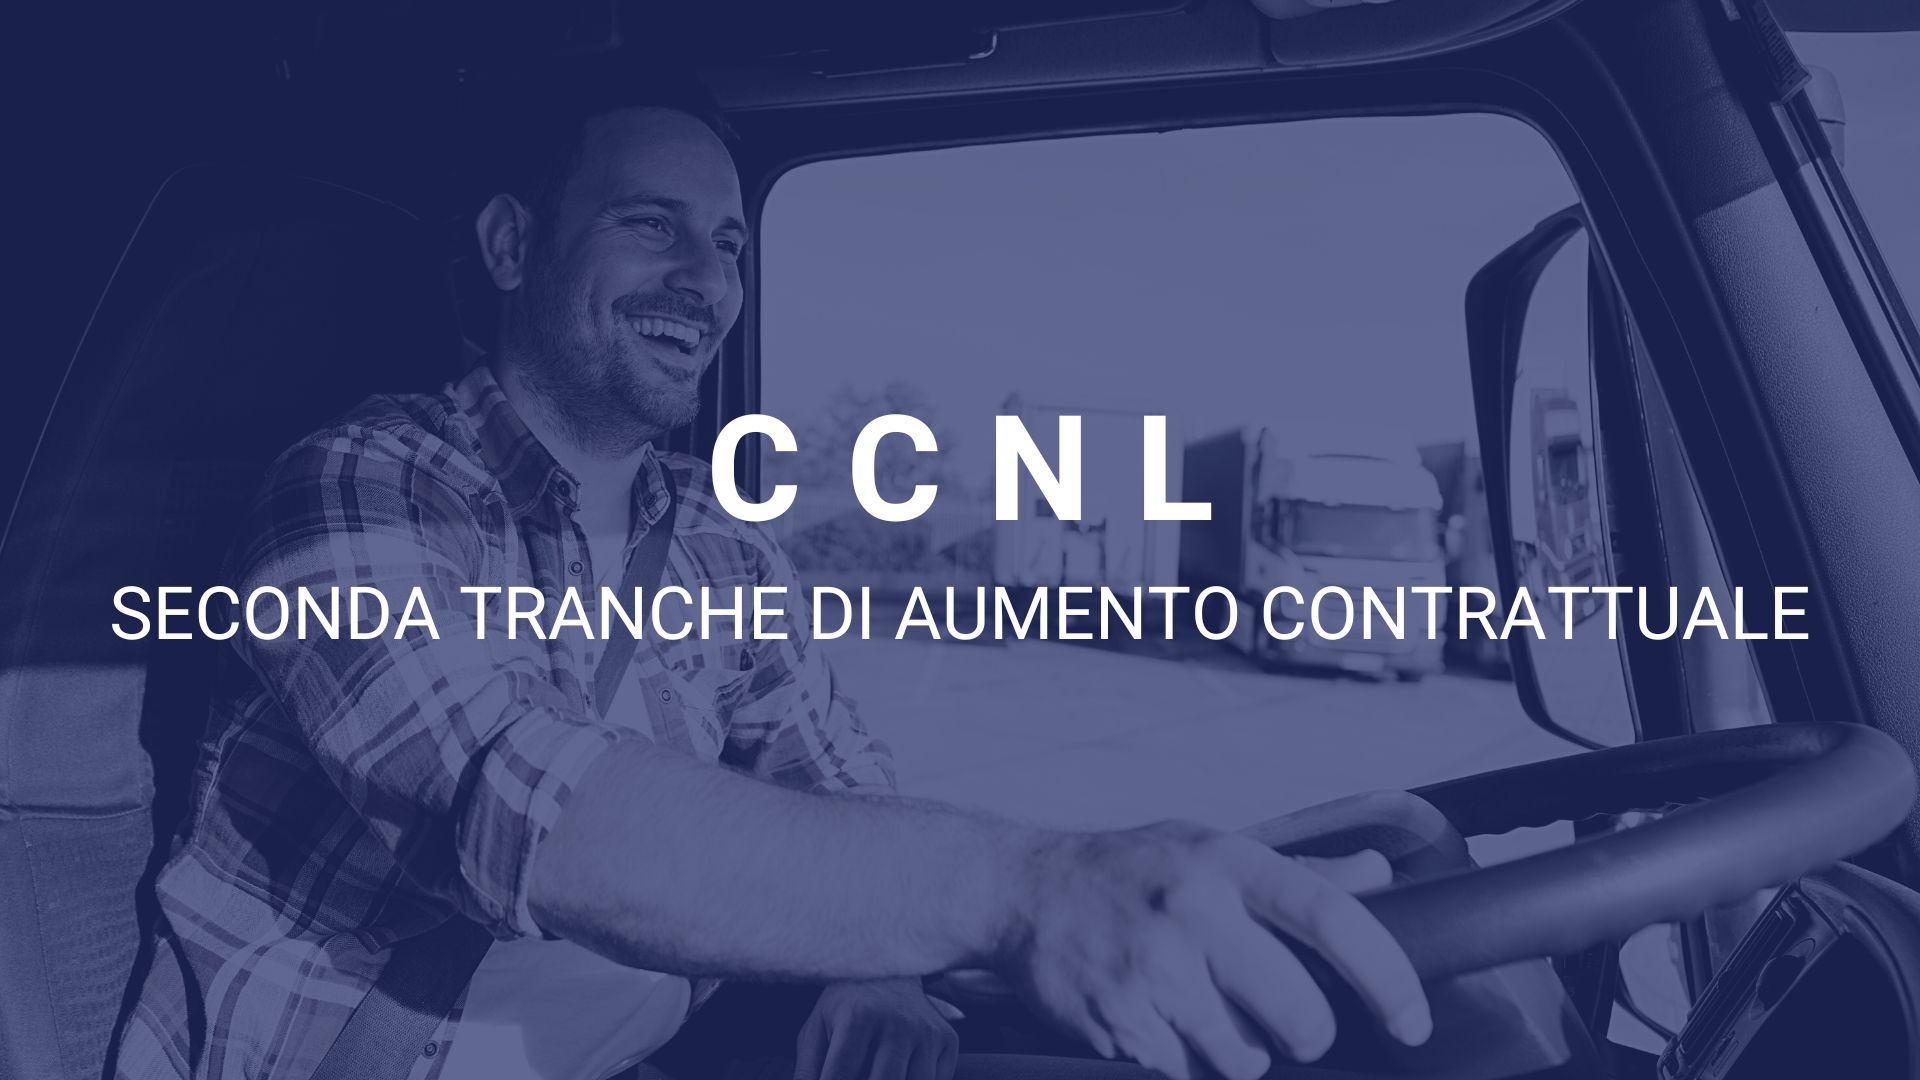 CCNL in erogazione ad ottobre la seconda tranche di aumento contrattuale.